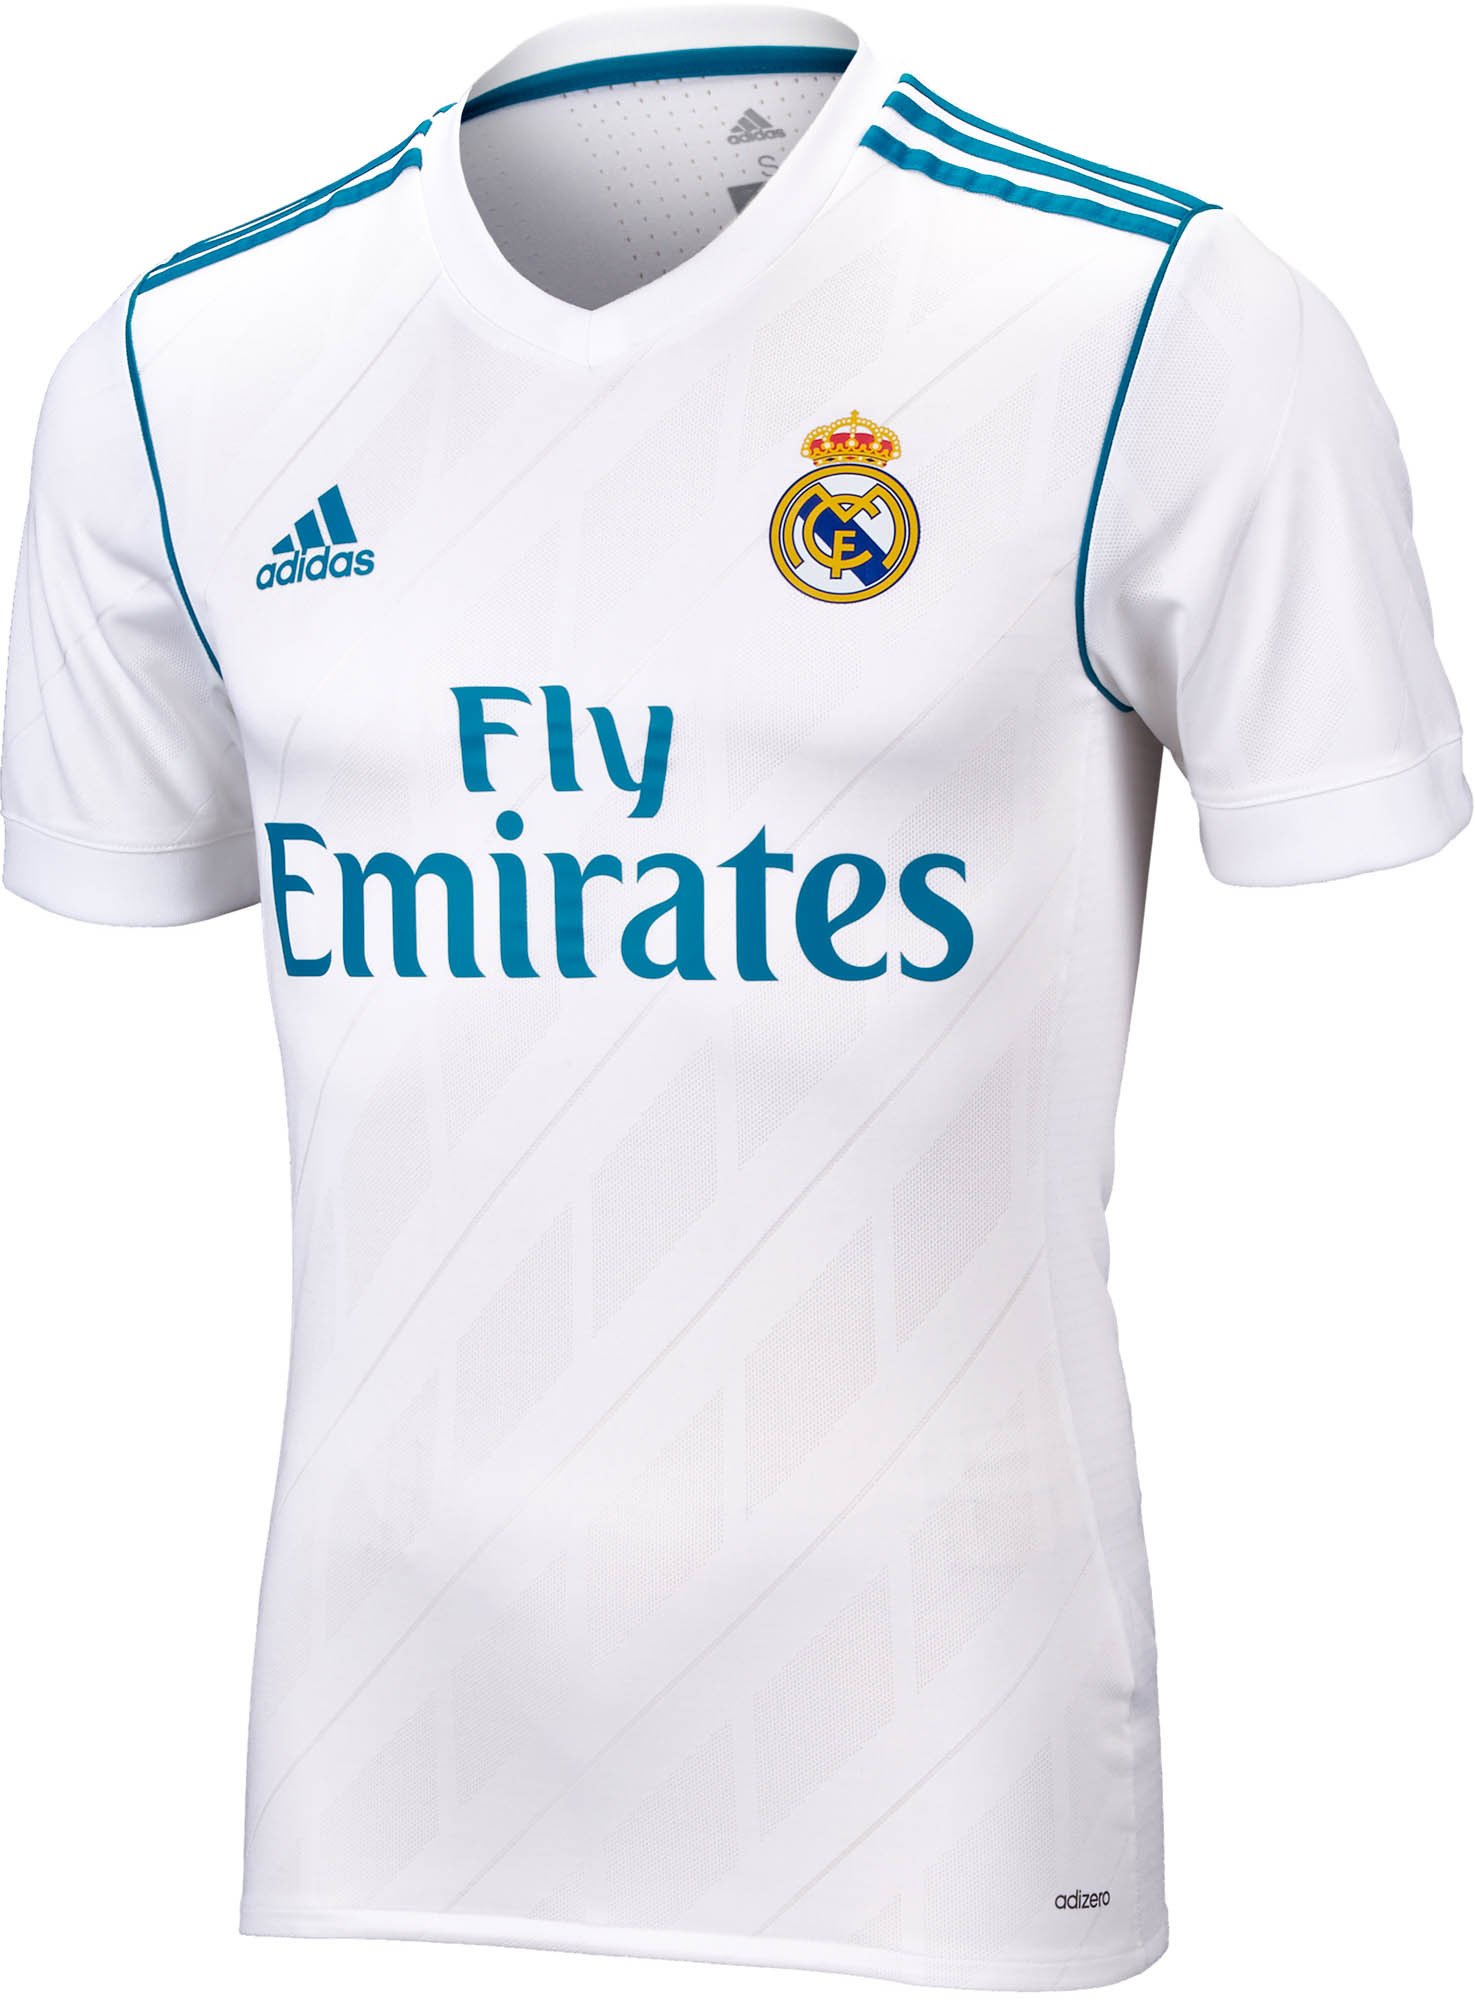 Dek de tafel is meer dan variabel 2017/18 Real Madrid Authentic Home Jerseys